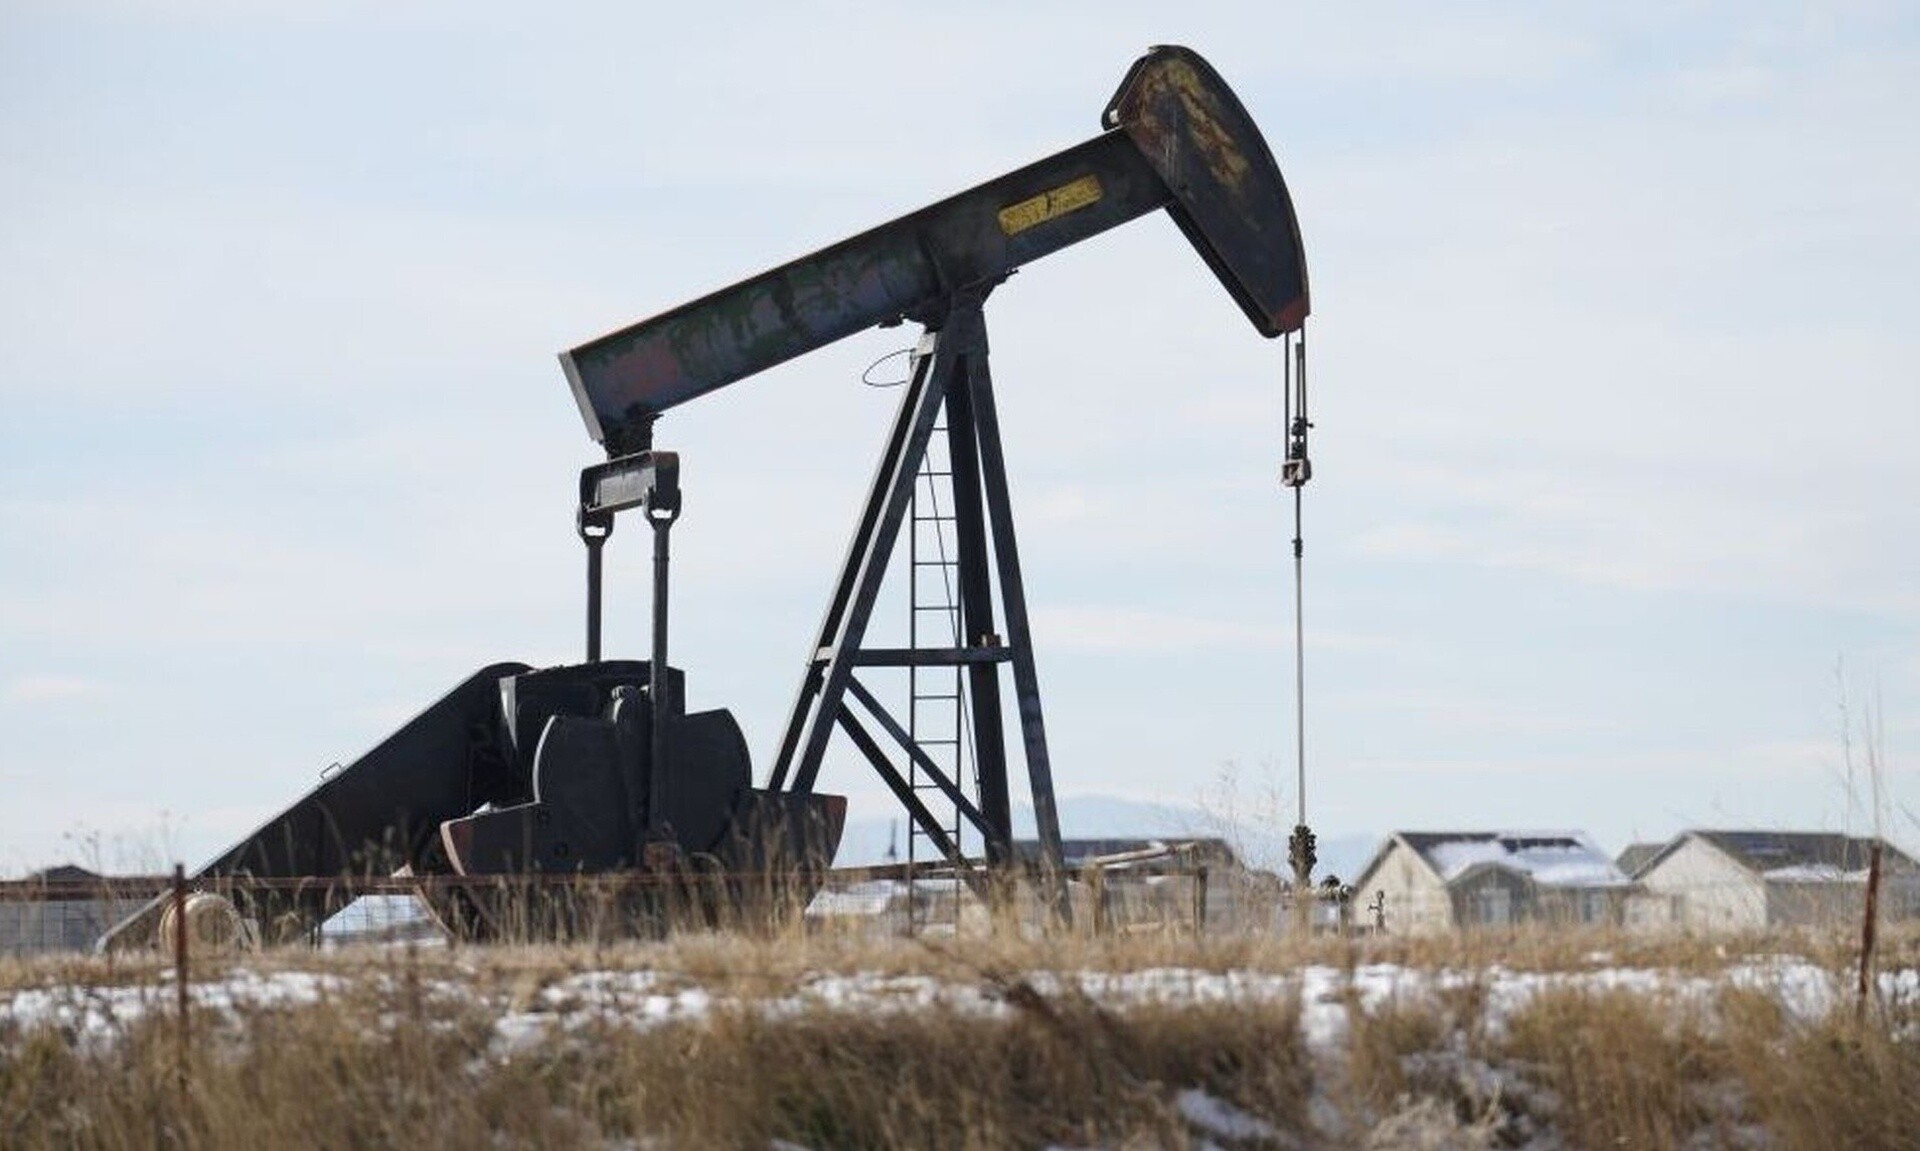 Πετρέλαιο: Ο εφιάλτης στην τιμή και οι φόβοι των αναλυτών